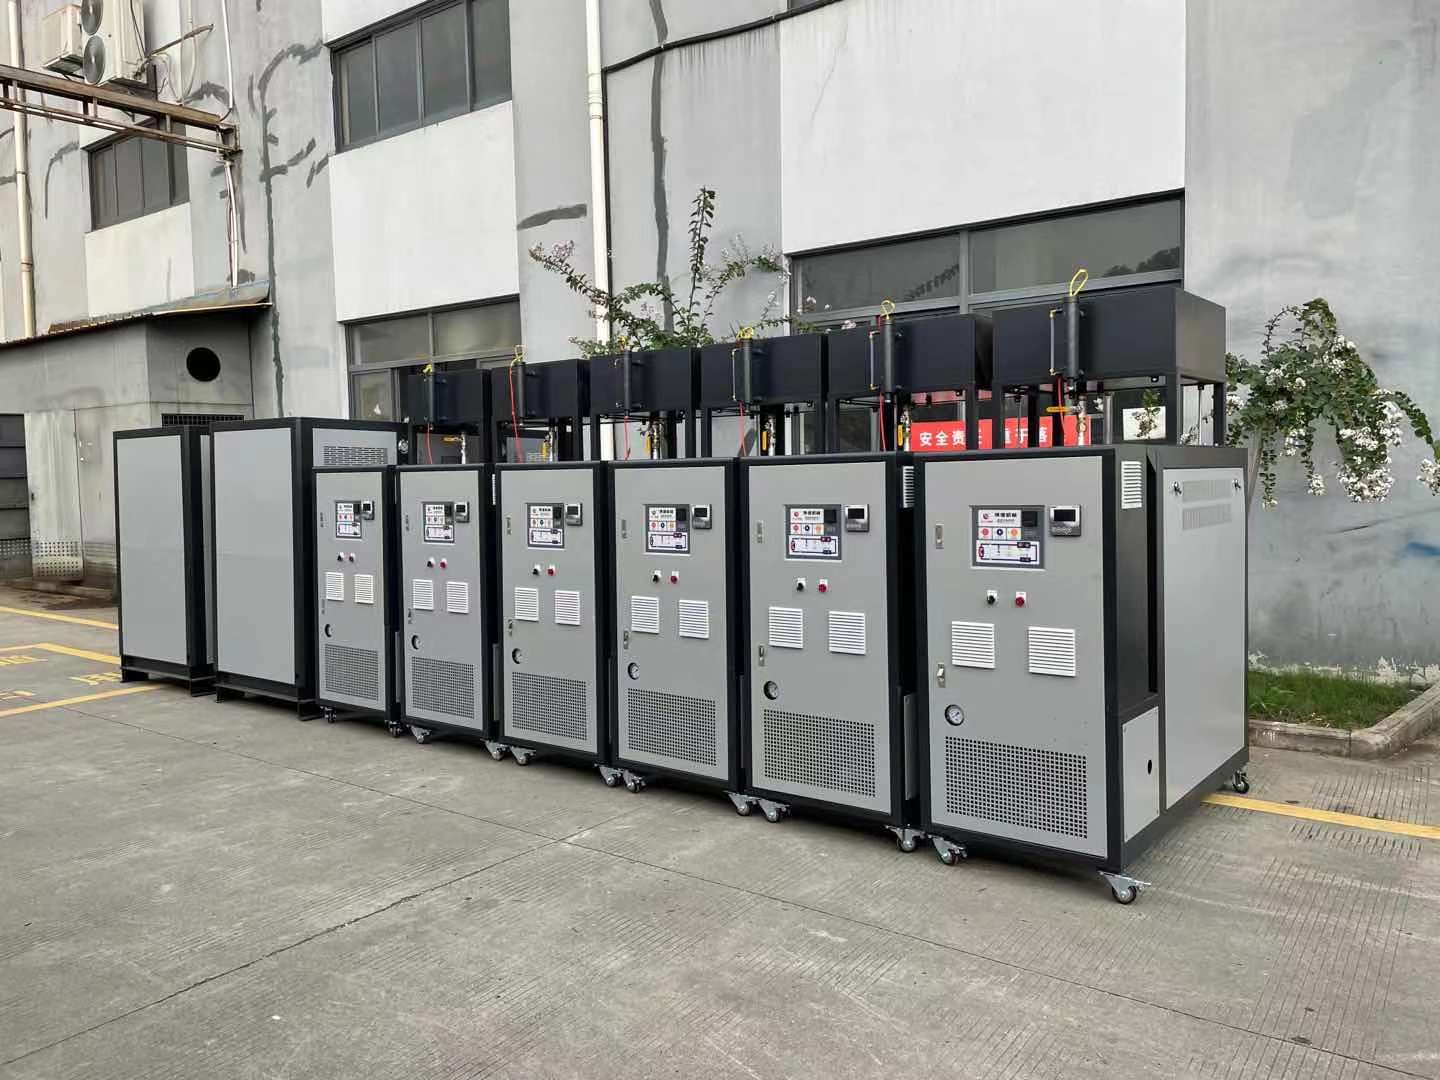 热媒电加热导热油炉具有低压、高温的特性,是一种新型环保工业炉。